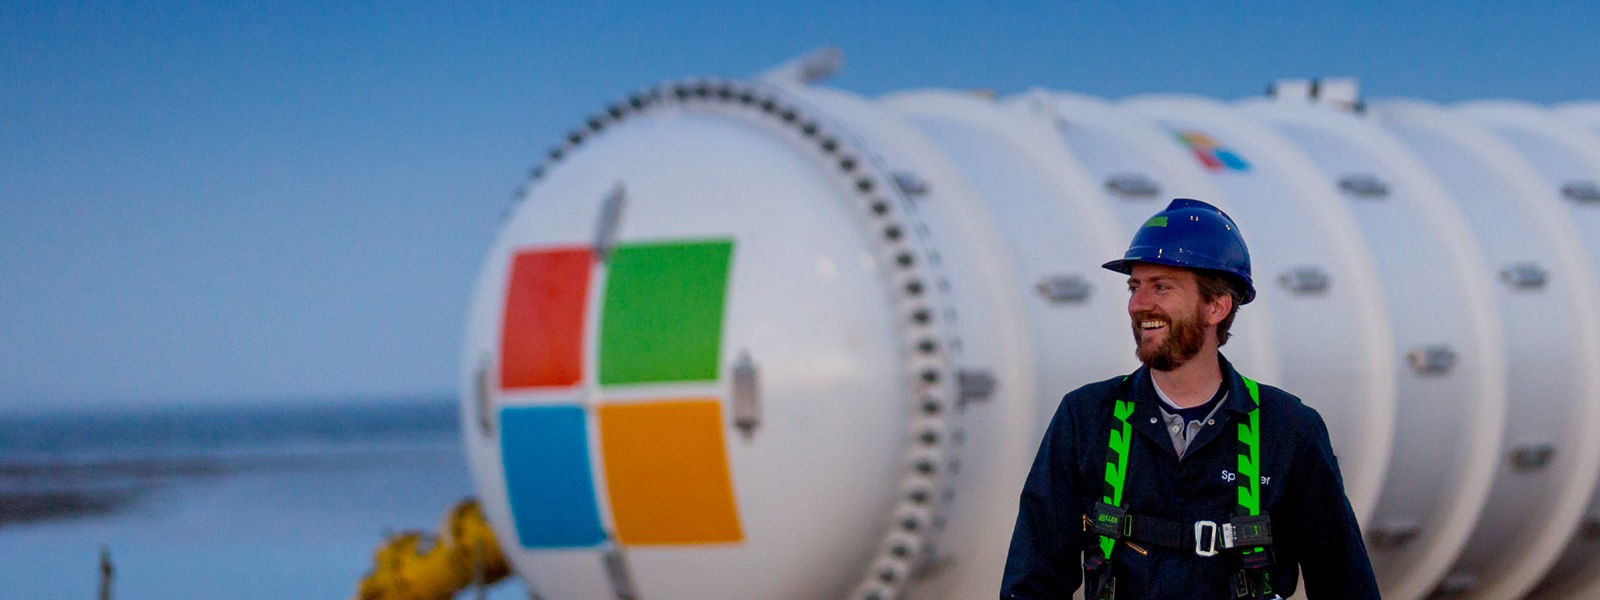 Microsoft 로고가 새겨진 가스 탱크 앞을 걸어가며 미소 짓는 산업 노동자